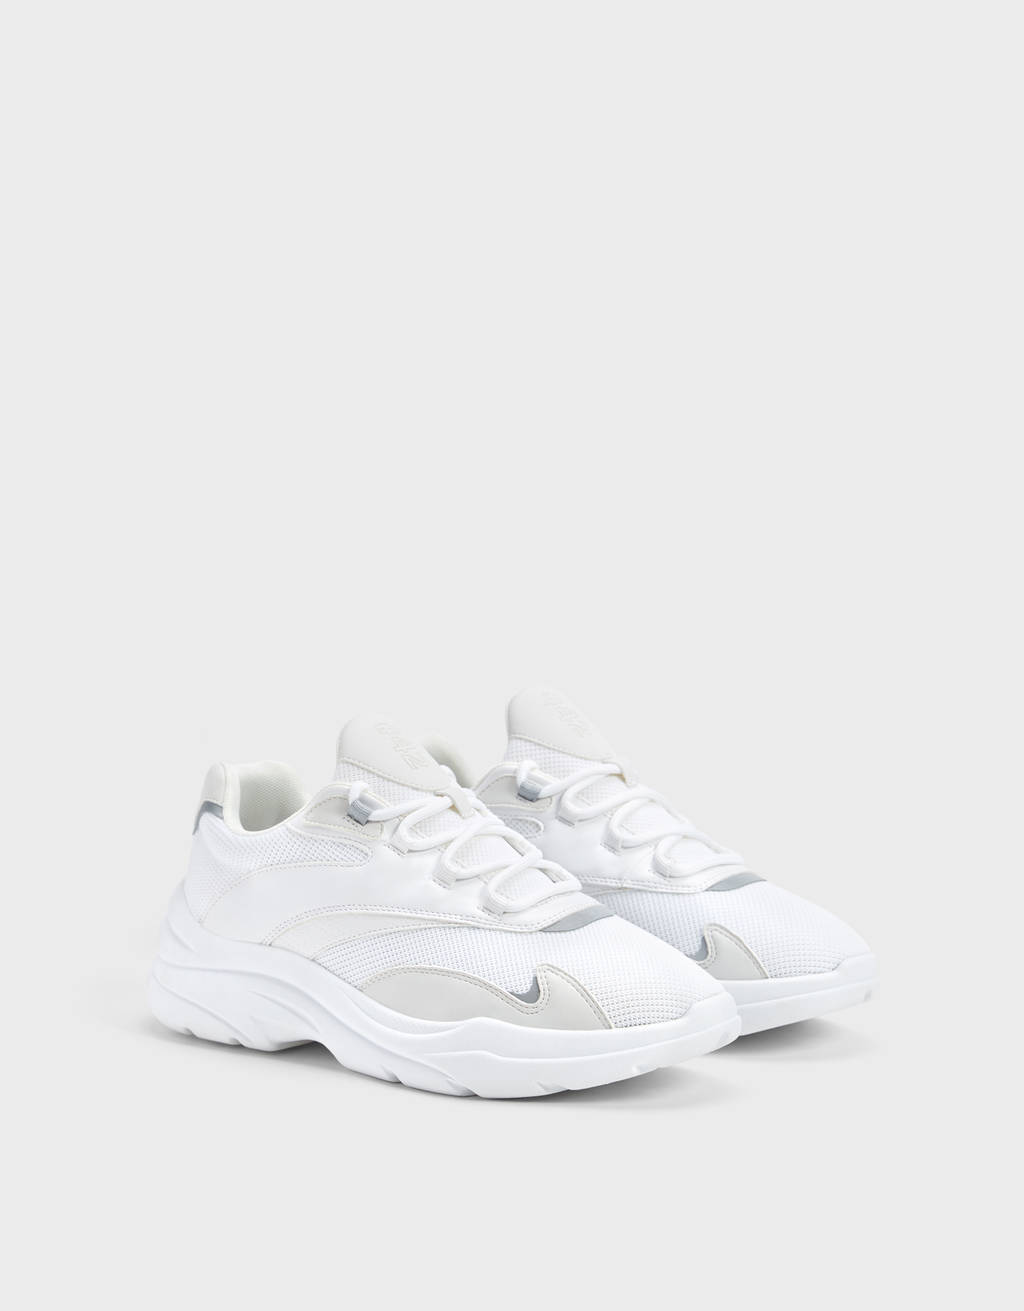 bershka white sneakers